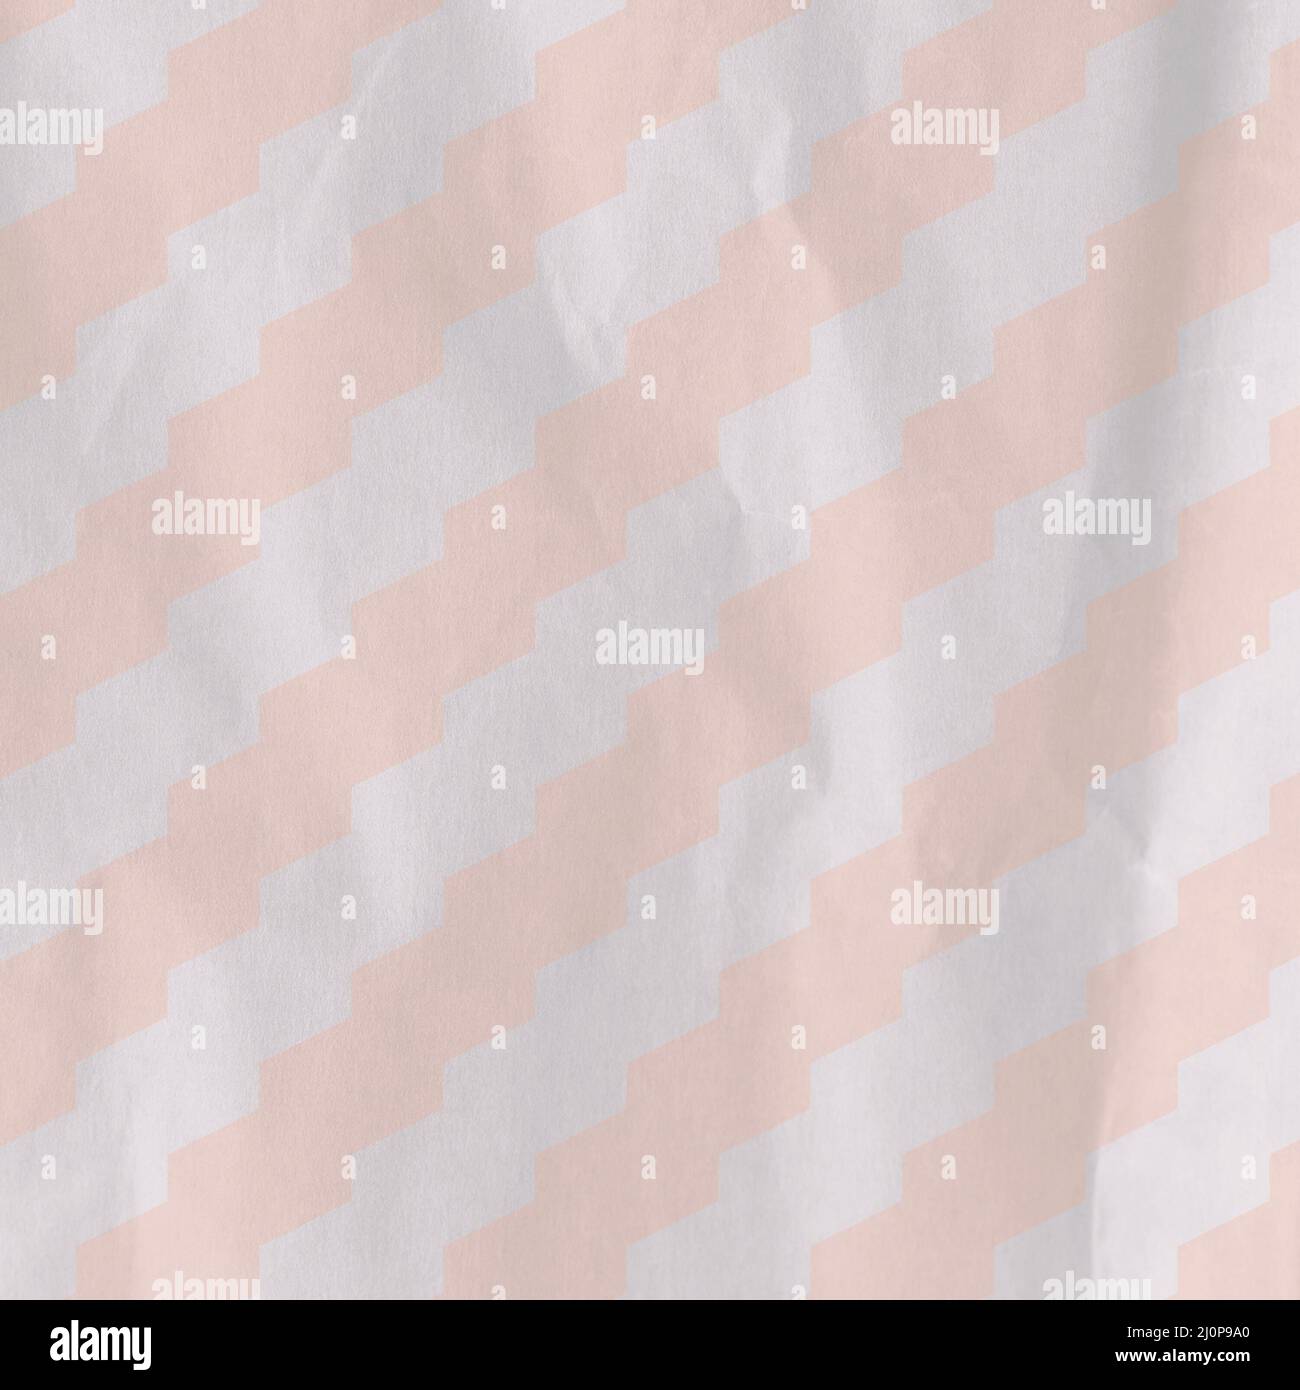 Rayas de color rosa claro y gris sobre papel arrugado, ideales para fondos  o fondos de pantalla Fotografía de stock - Alamy